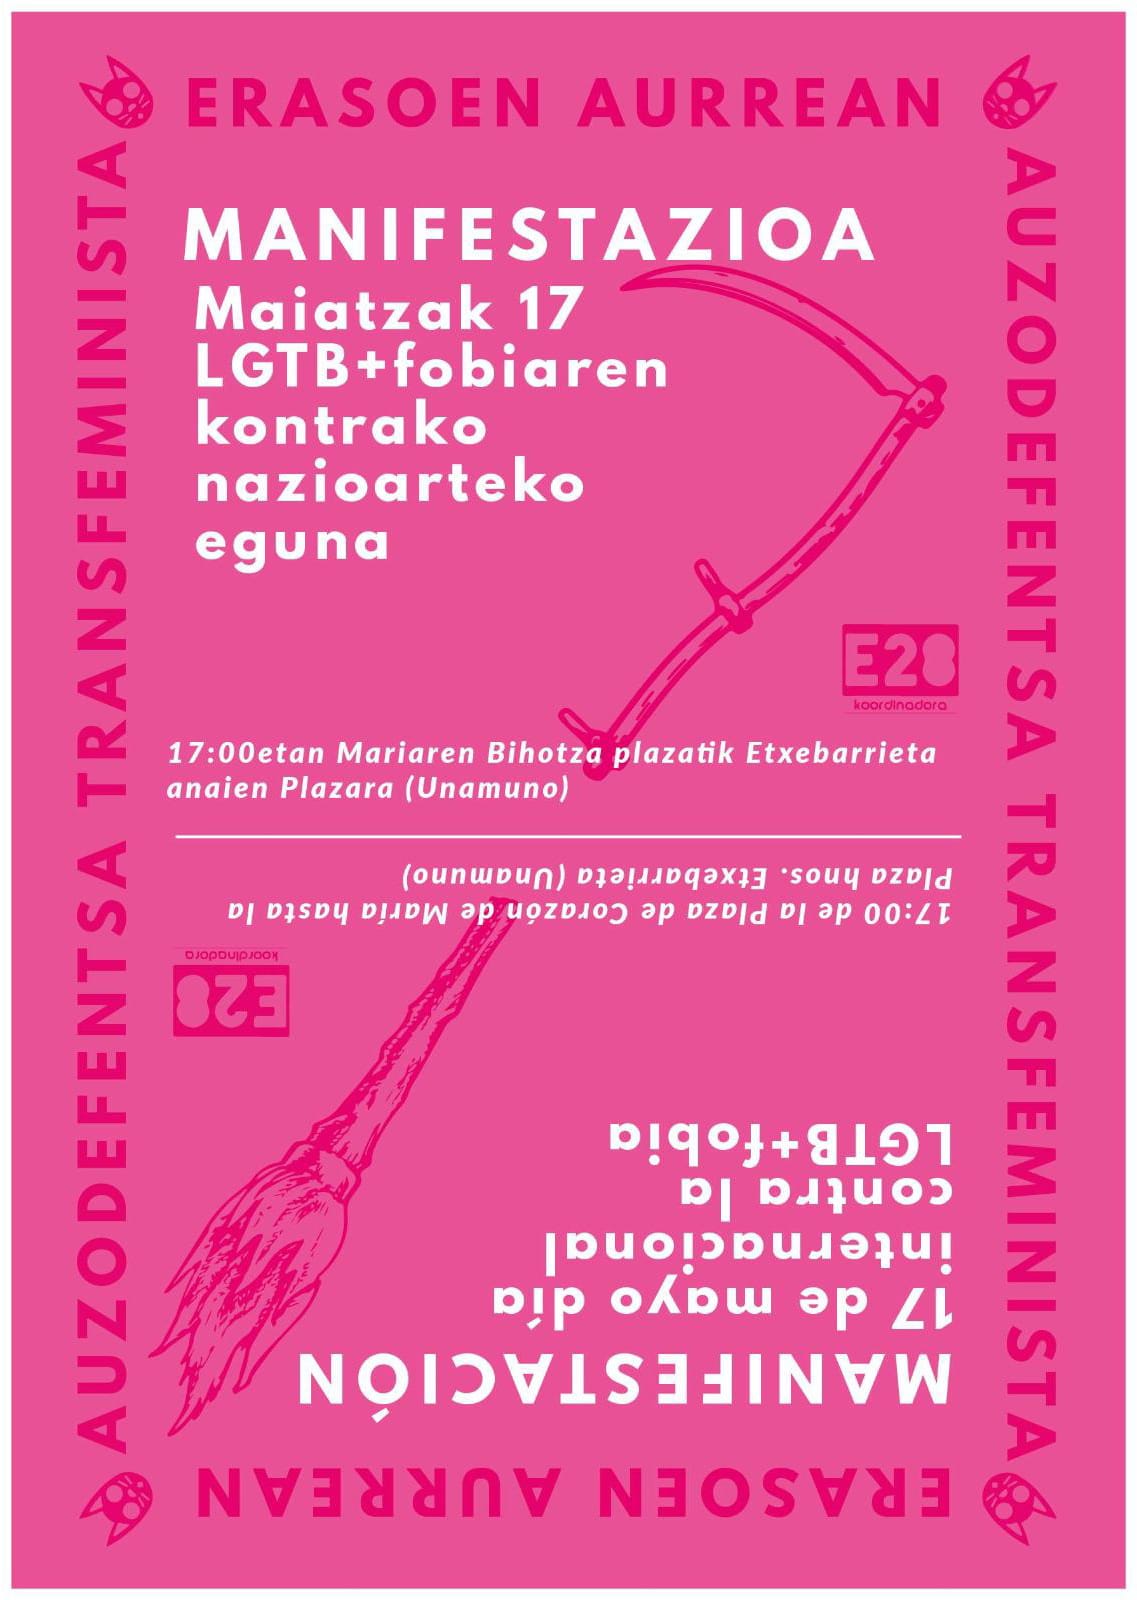 Manifestazioa Maiatzak 17 "erasoen aurrean, auzodefentsa transfeminista" 17:00etan Bilboko Mariaren Bihotza plazan